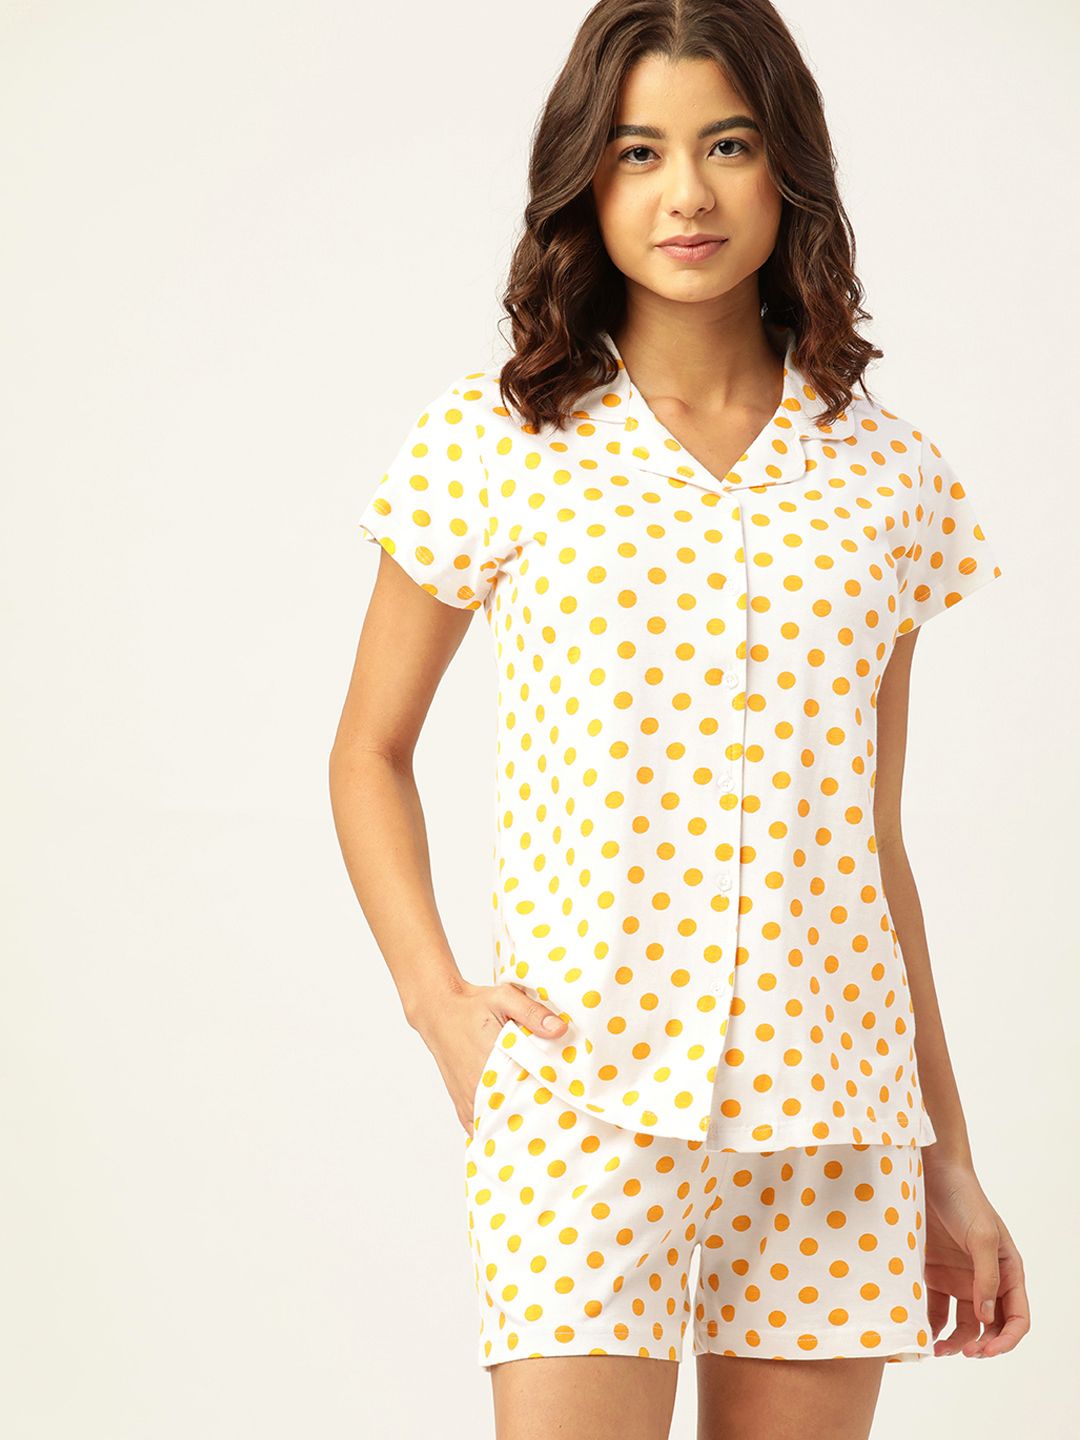 ETC Women White & Orange Pure Cotton Polka Dots Print Shorts Set Price in India